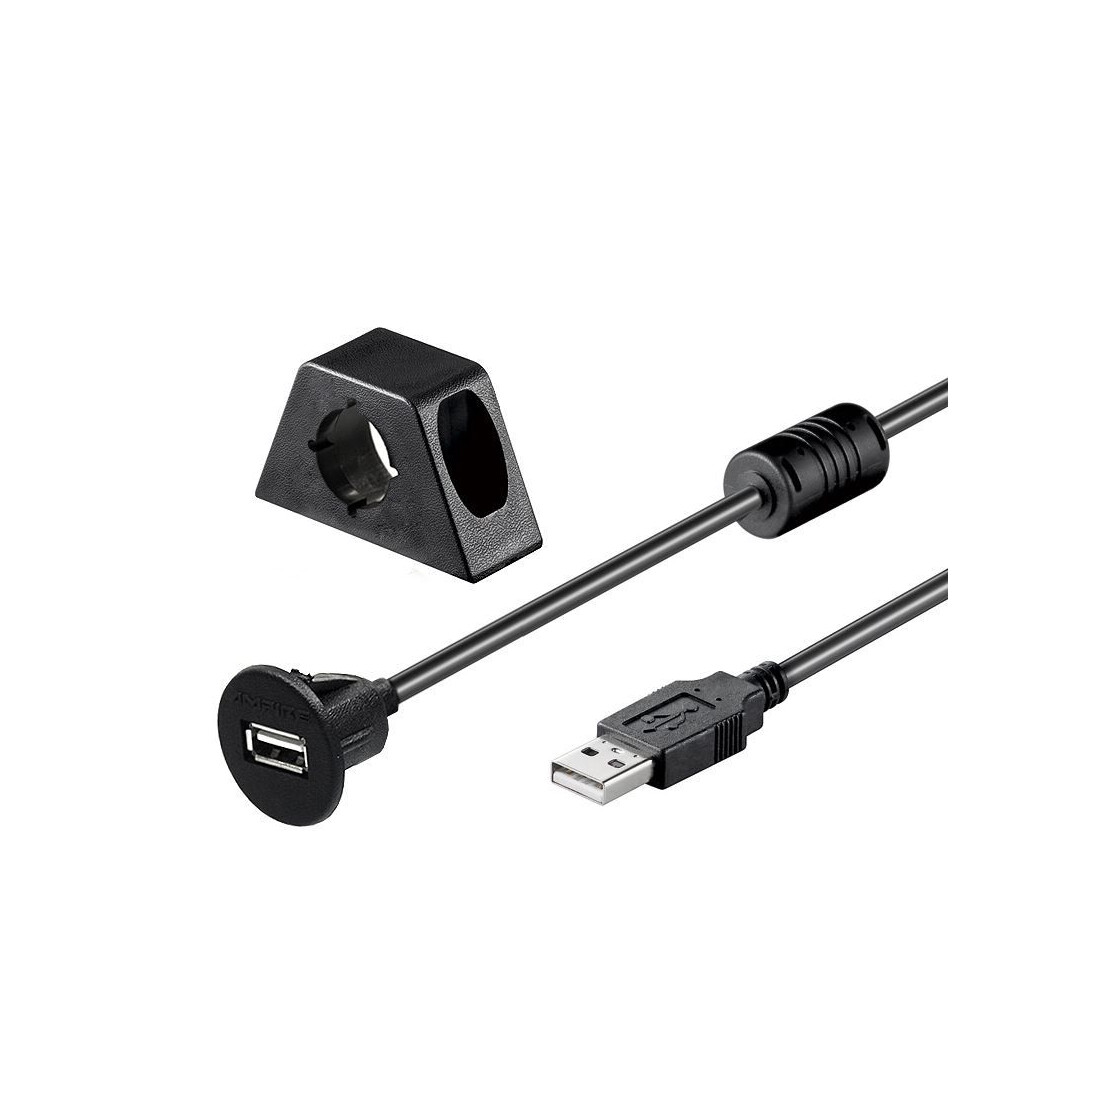 Ampire USB- Einbaubuchse mit 200 cm Kabel, 16,90 €